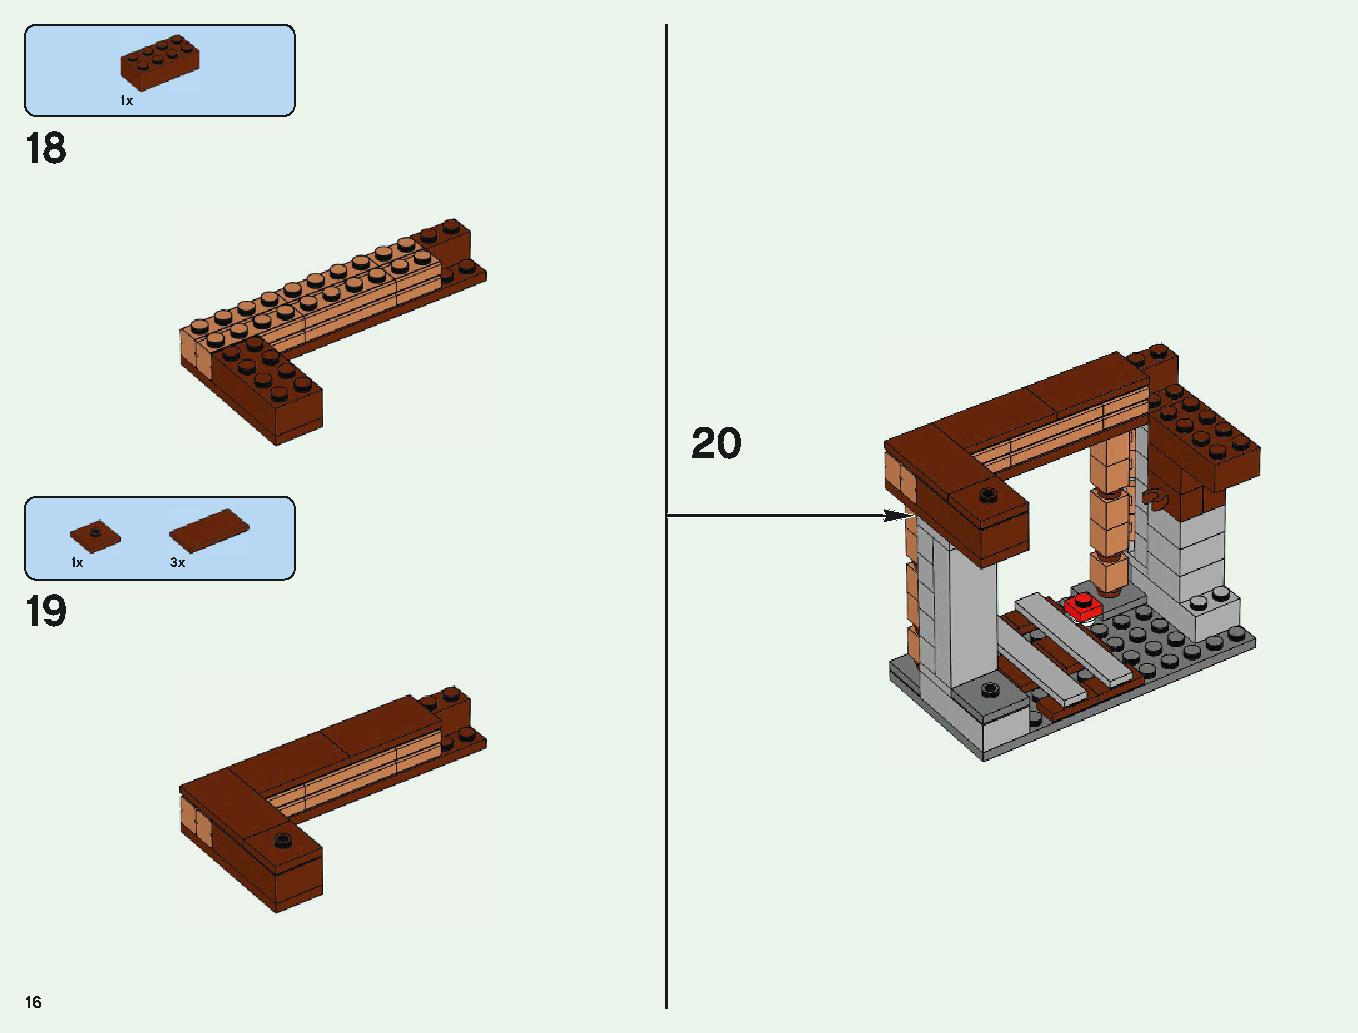 ベッドロックの冒険 21147 レゴの商品情報 レゴの説明書・組立方法 16 page